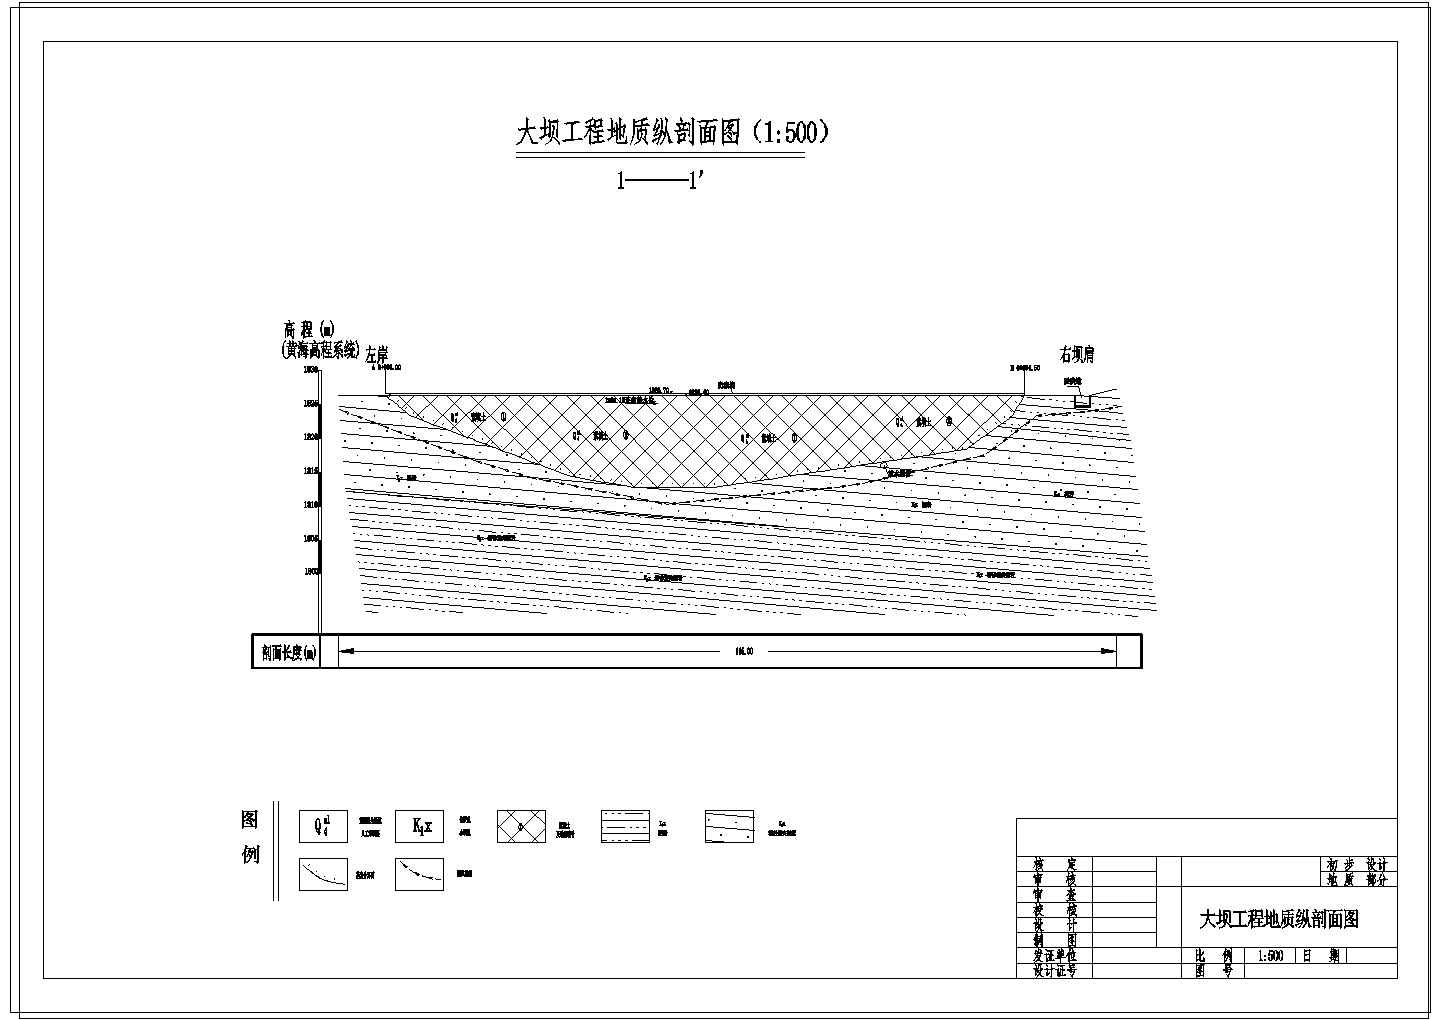 [四川]水库除险加固工程设计施工图(大坝 溢洪道 观测设施)